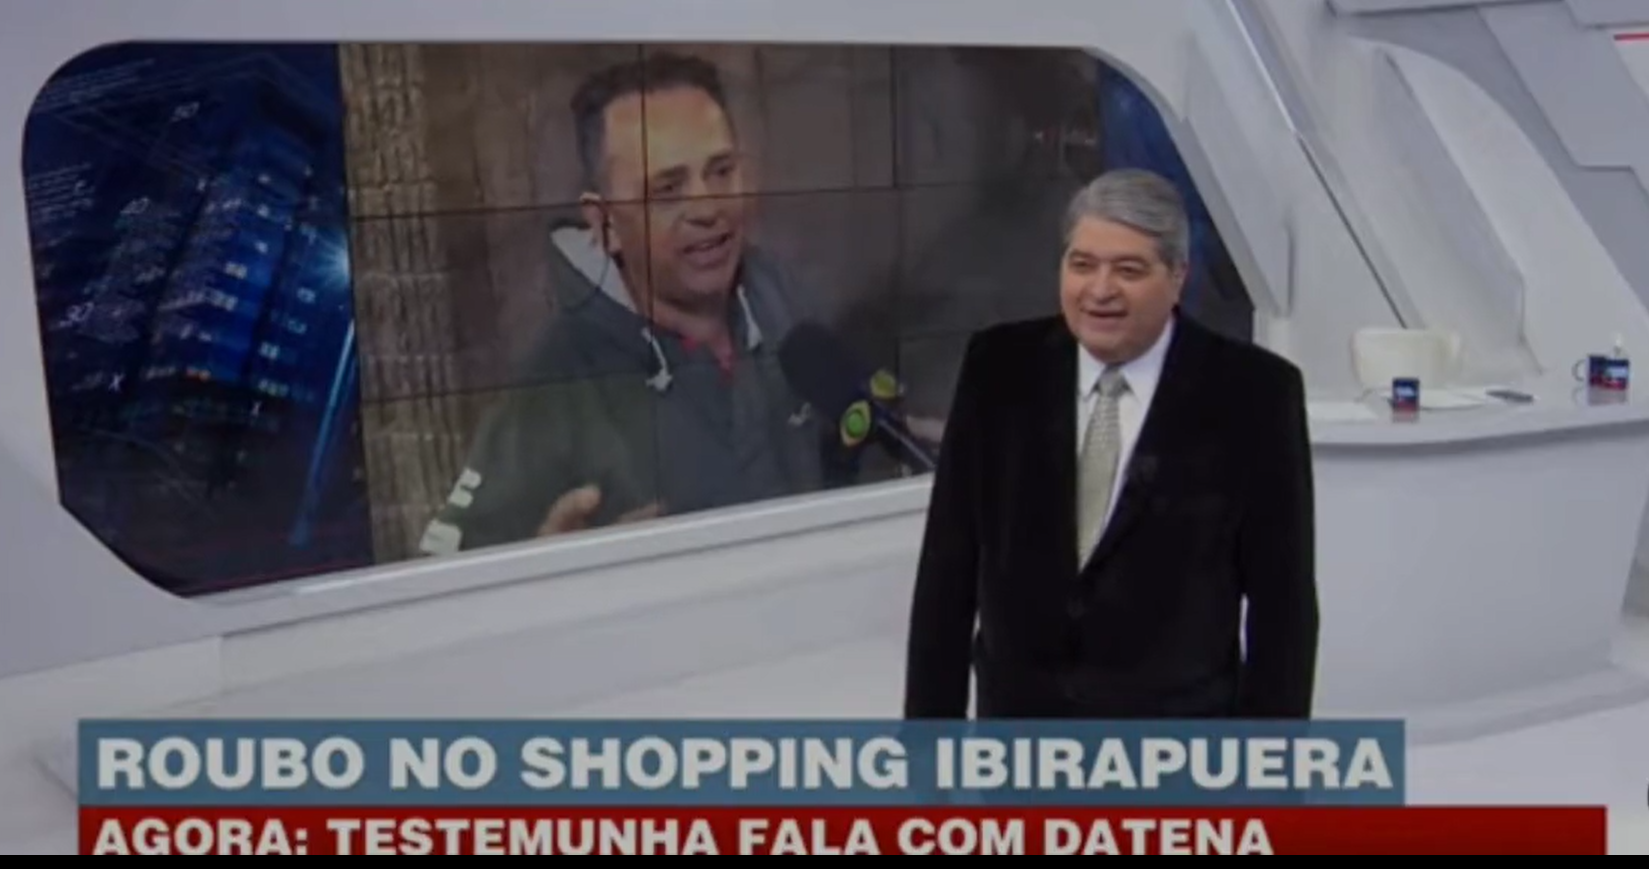 Entrevistado diz ao vivo em programa de Datena que irá votar em Lula